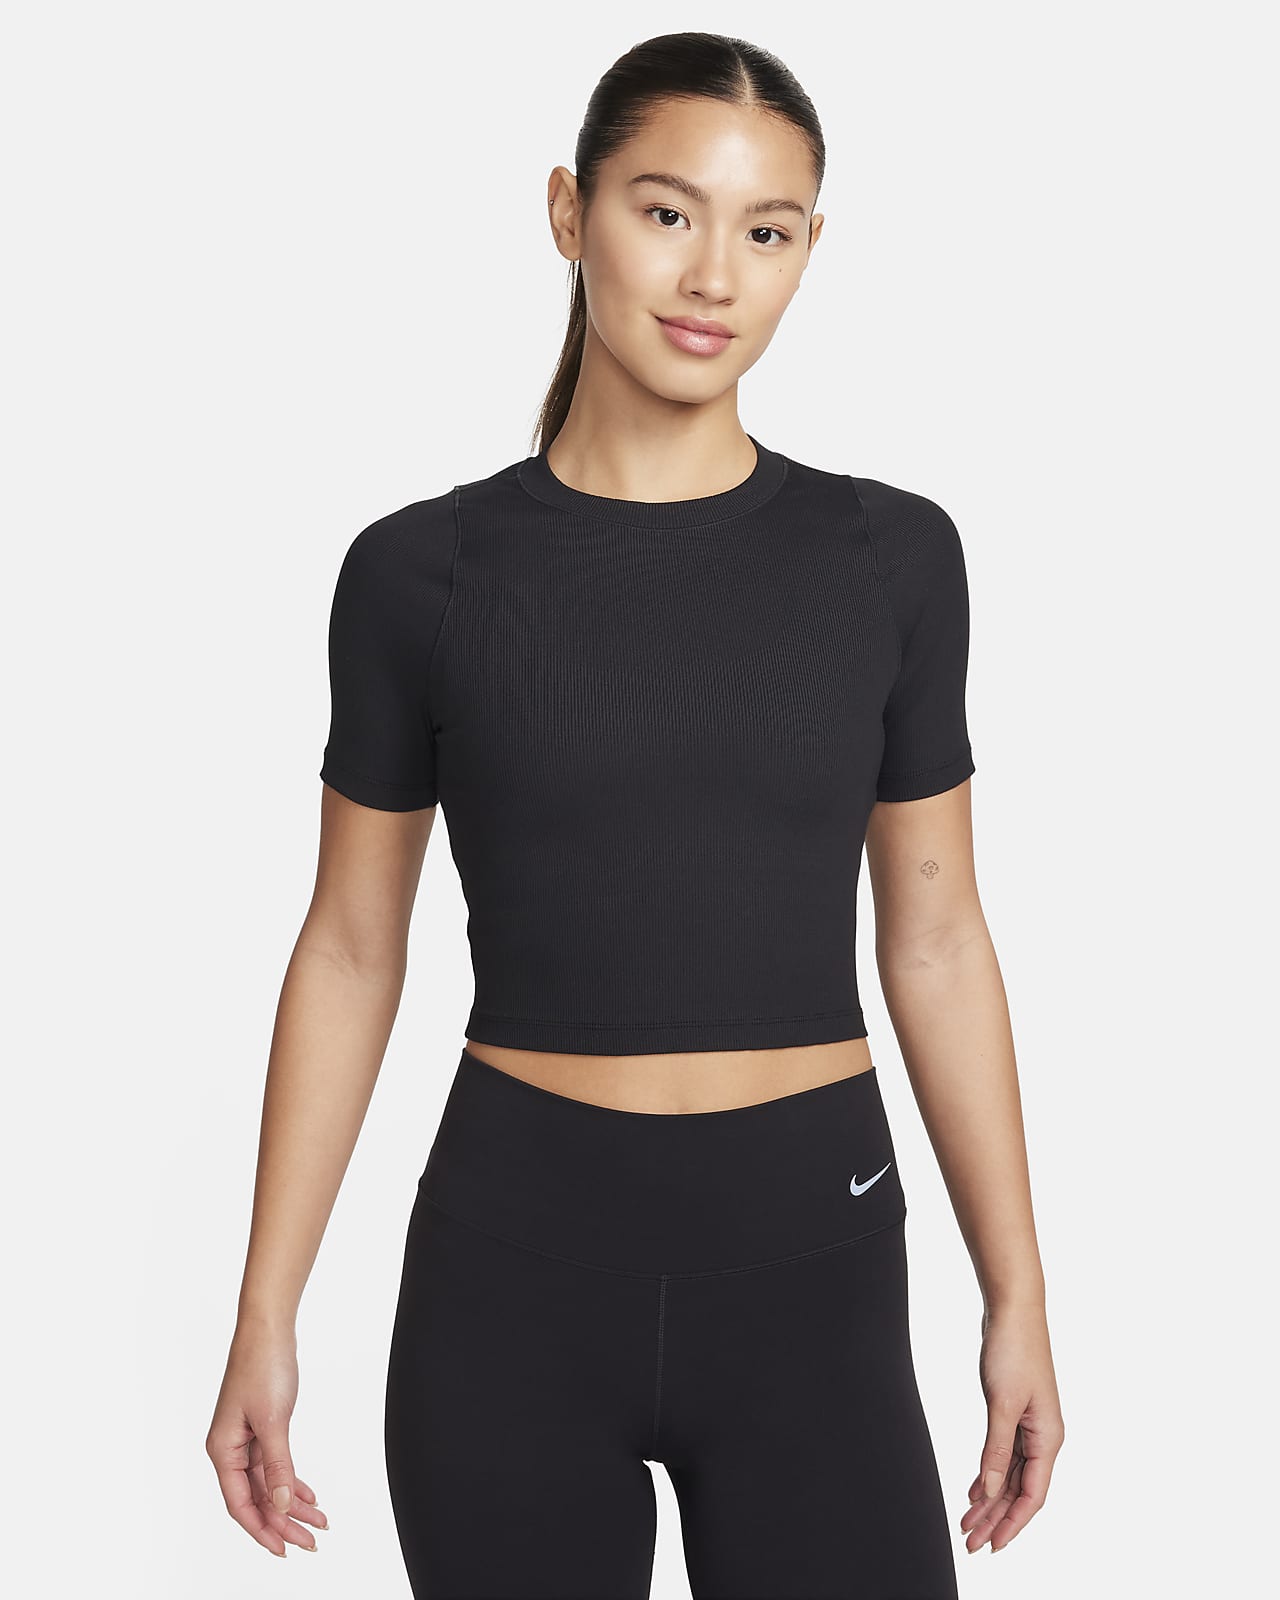 เสื้อเอวลอยแขนสั้นผู้หญิง Dri-FIT Nike Zenvy